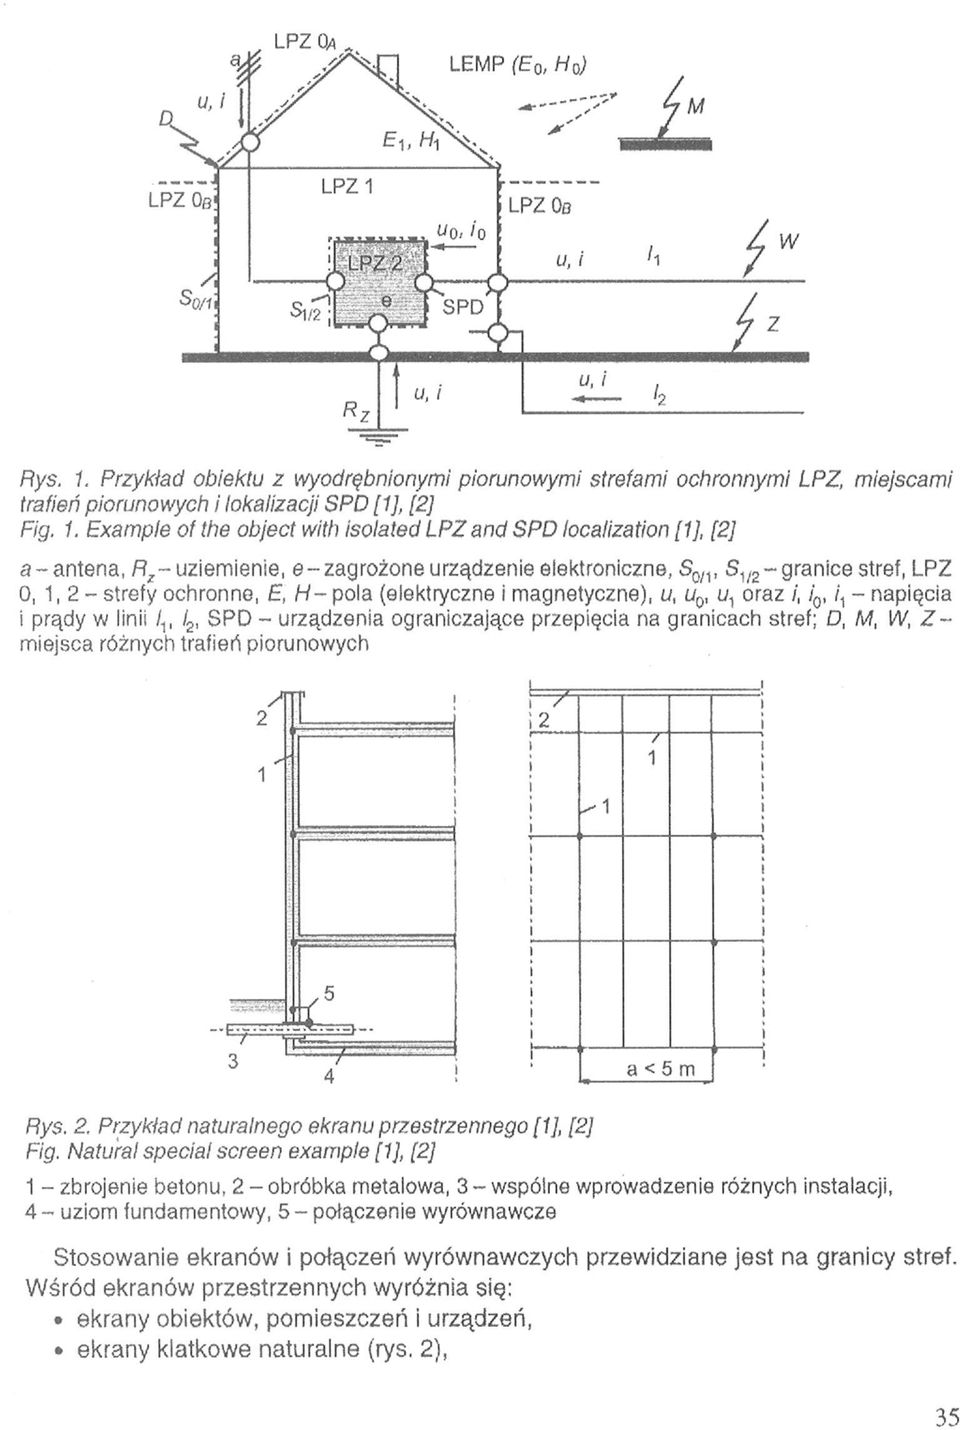 Natural special screen example [1], [2] 1 - zbrojenie betonu, 2 - obróbka metalowa, 3-wspólne wprowadzenie różnych instalacji, 4 - uziom fundamentowy, 5 -